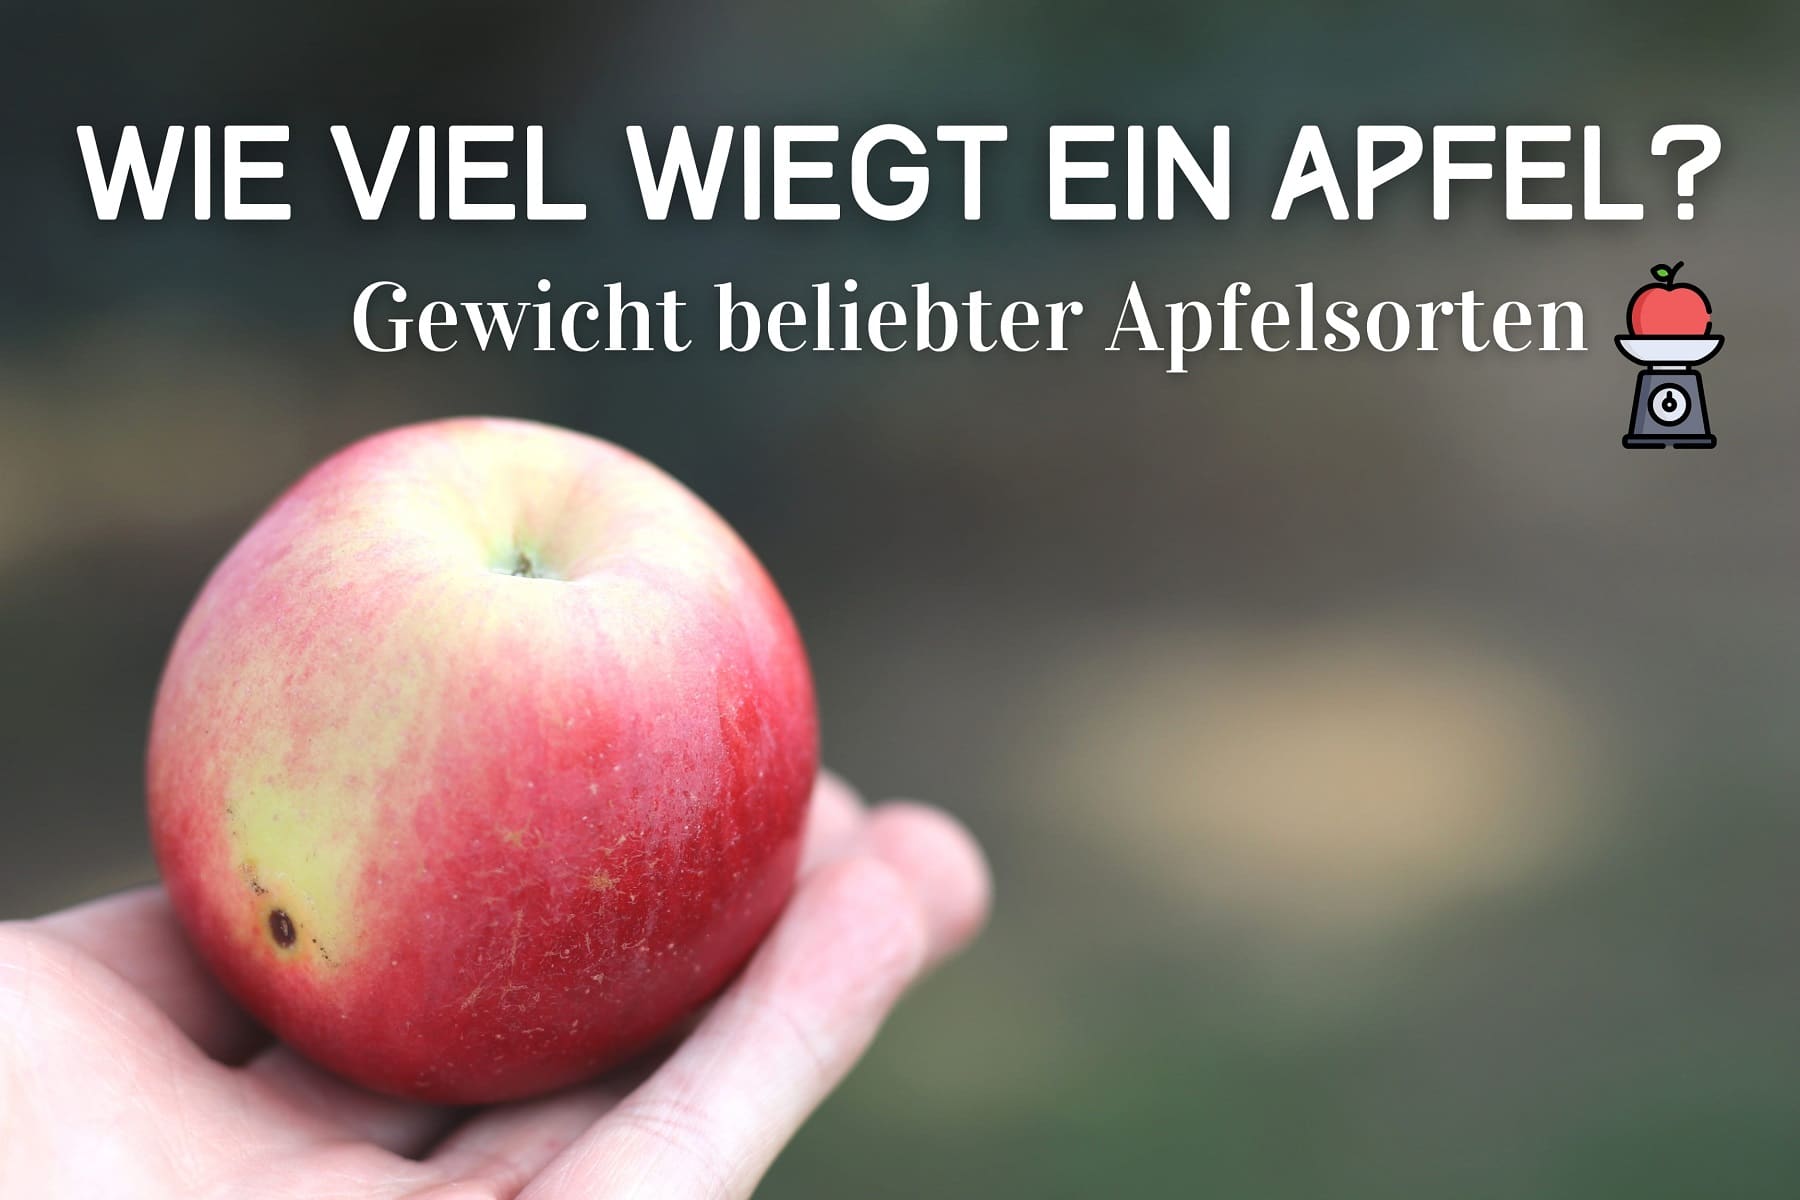 ¿Cuántos gramos pesa una manzana?